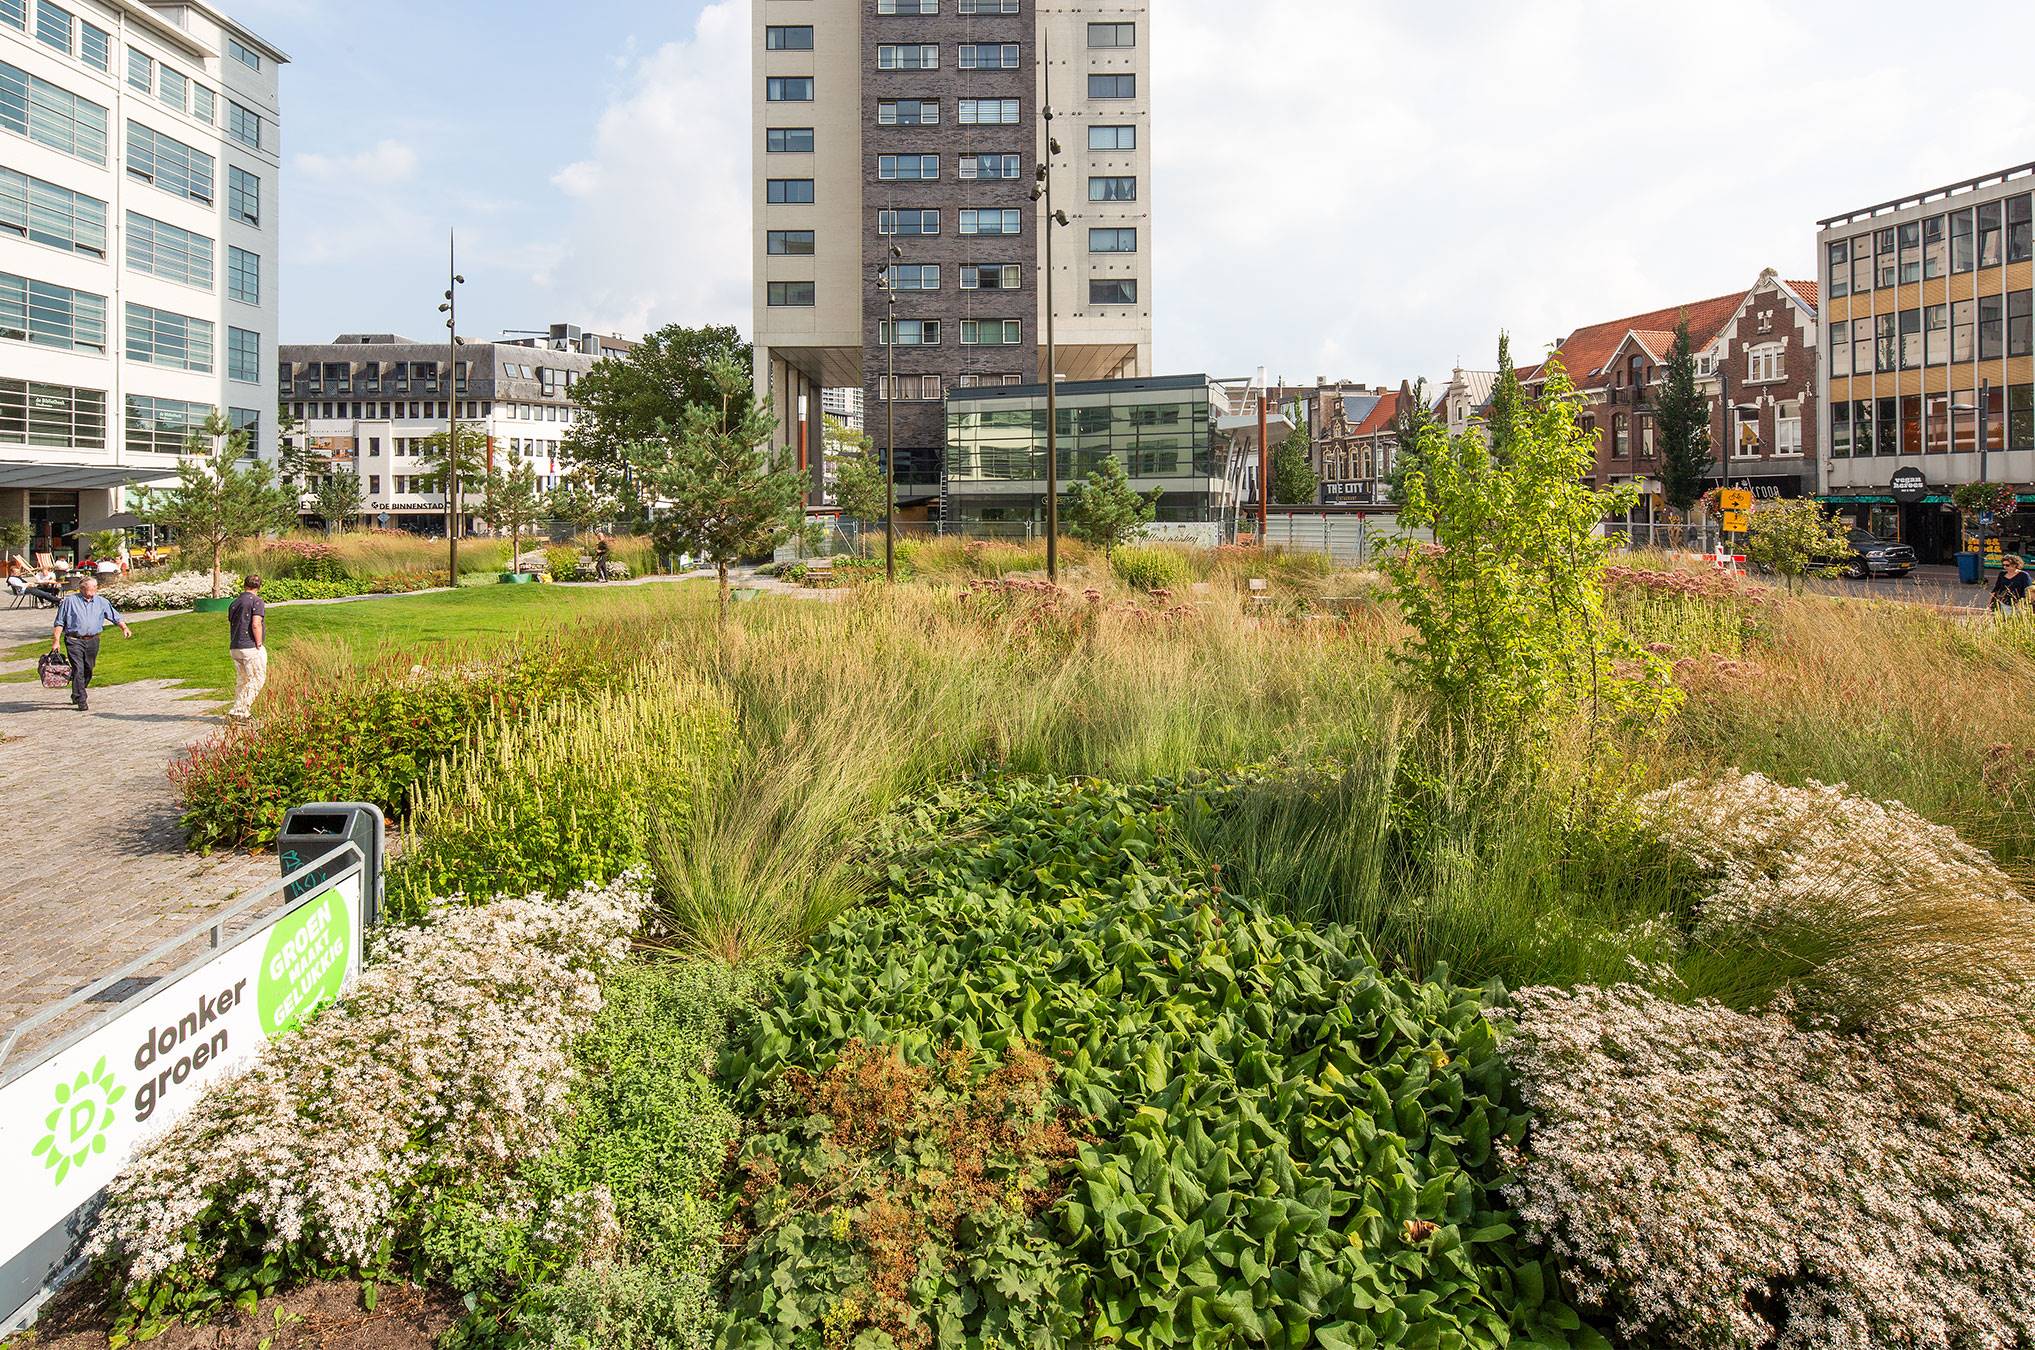 Clausplein, Eindhoven - Van Gemeente Eindhoven kregen wij de opdracht om het openbare Clausplein te voorzien van groenaanleg en herinrichting